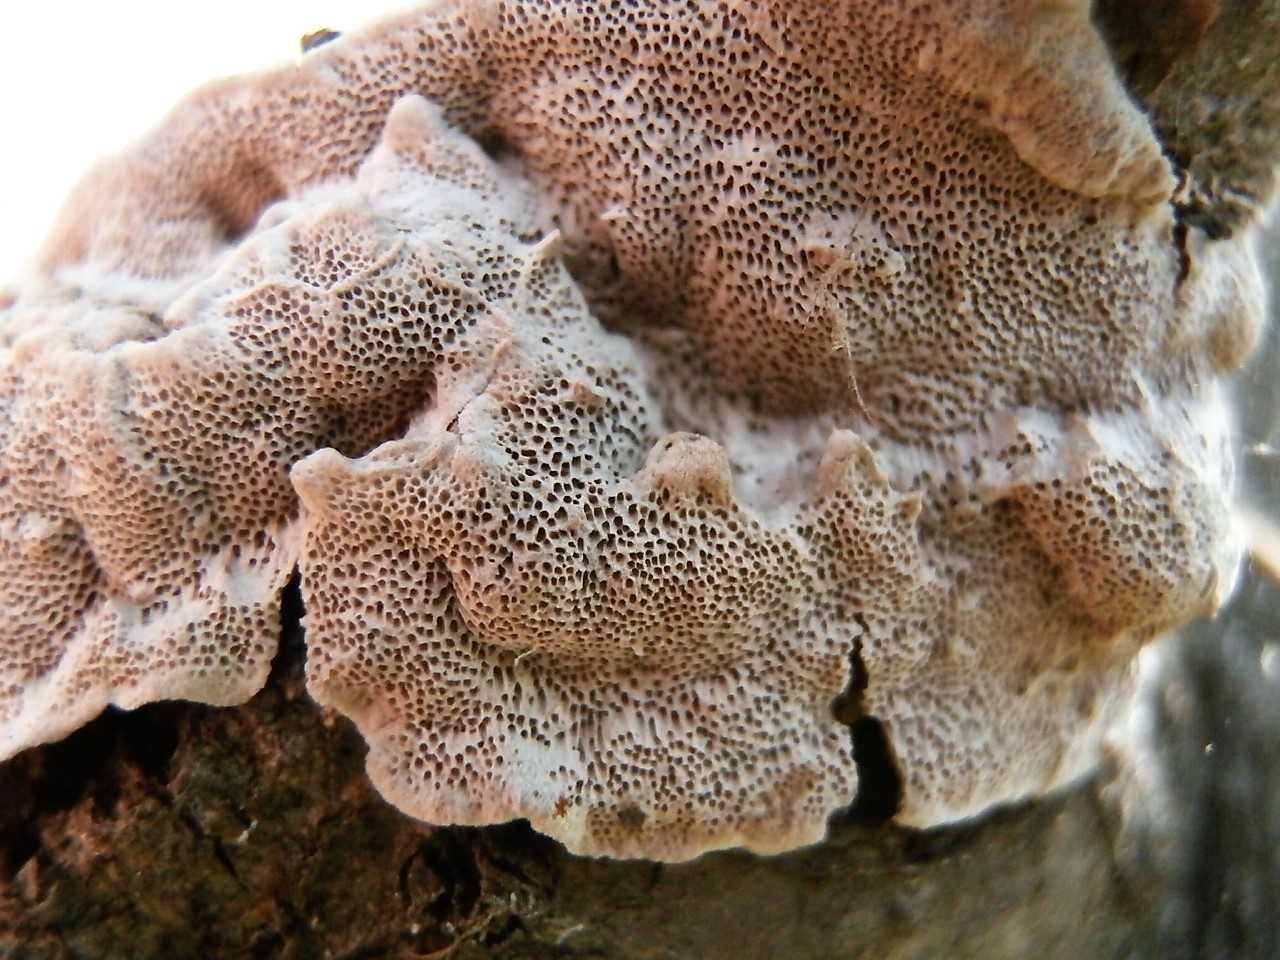 Съедобен ли Цериопорус мягкий. Как он выглядит и где чаще всего произрастает. Как отличить от других разновидностей грибов.